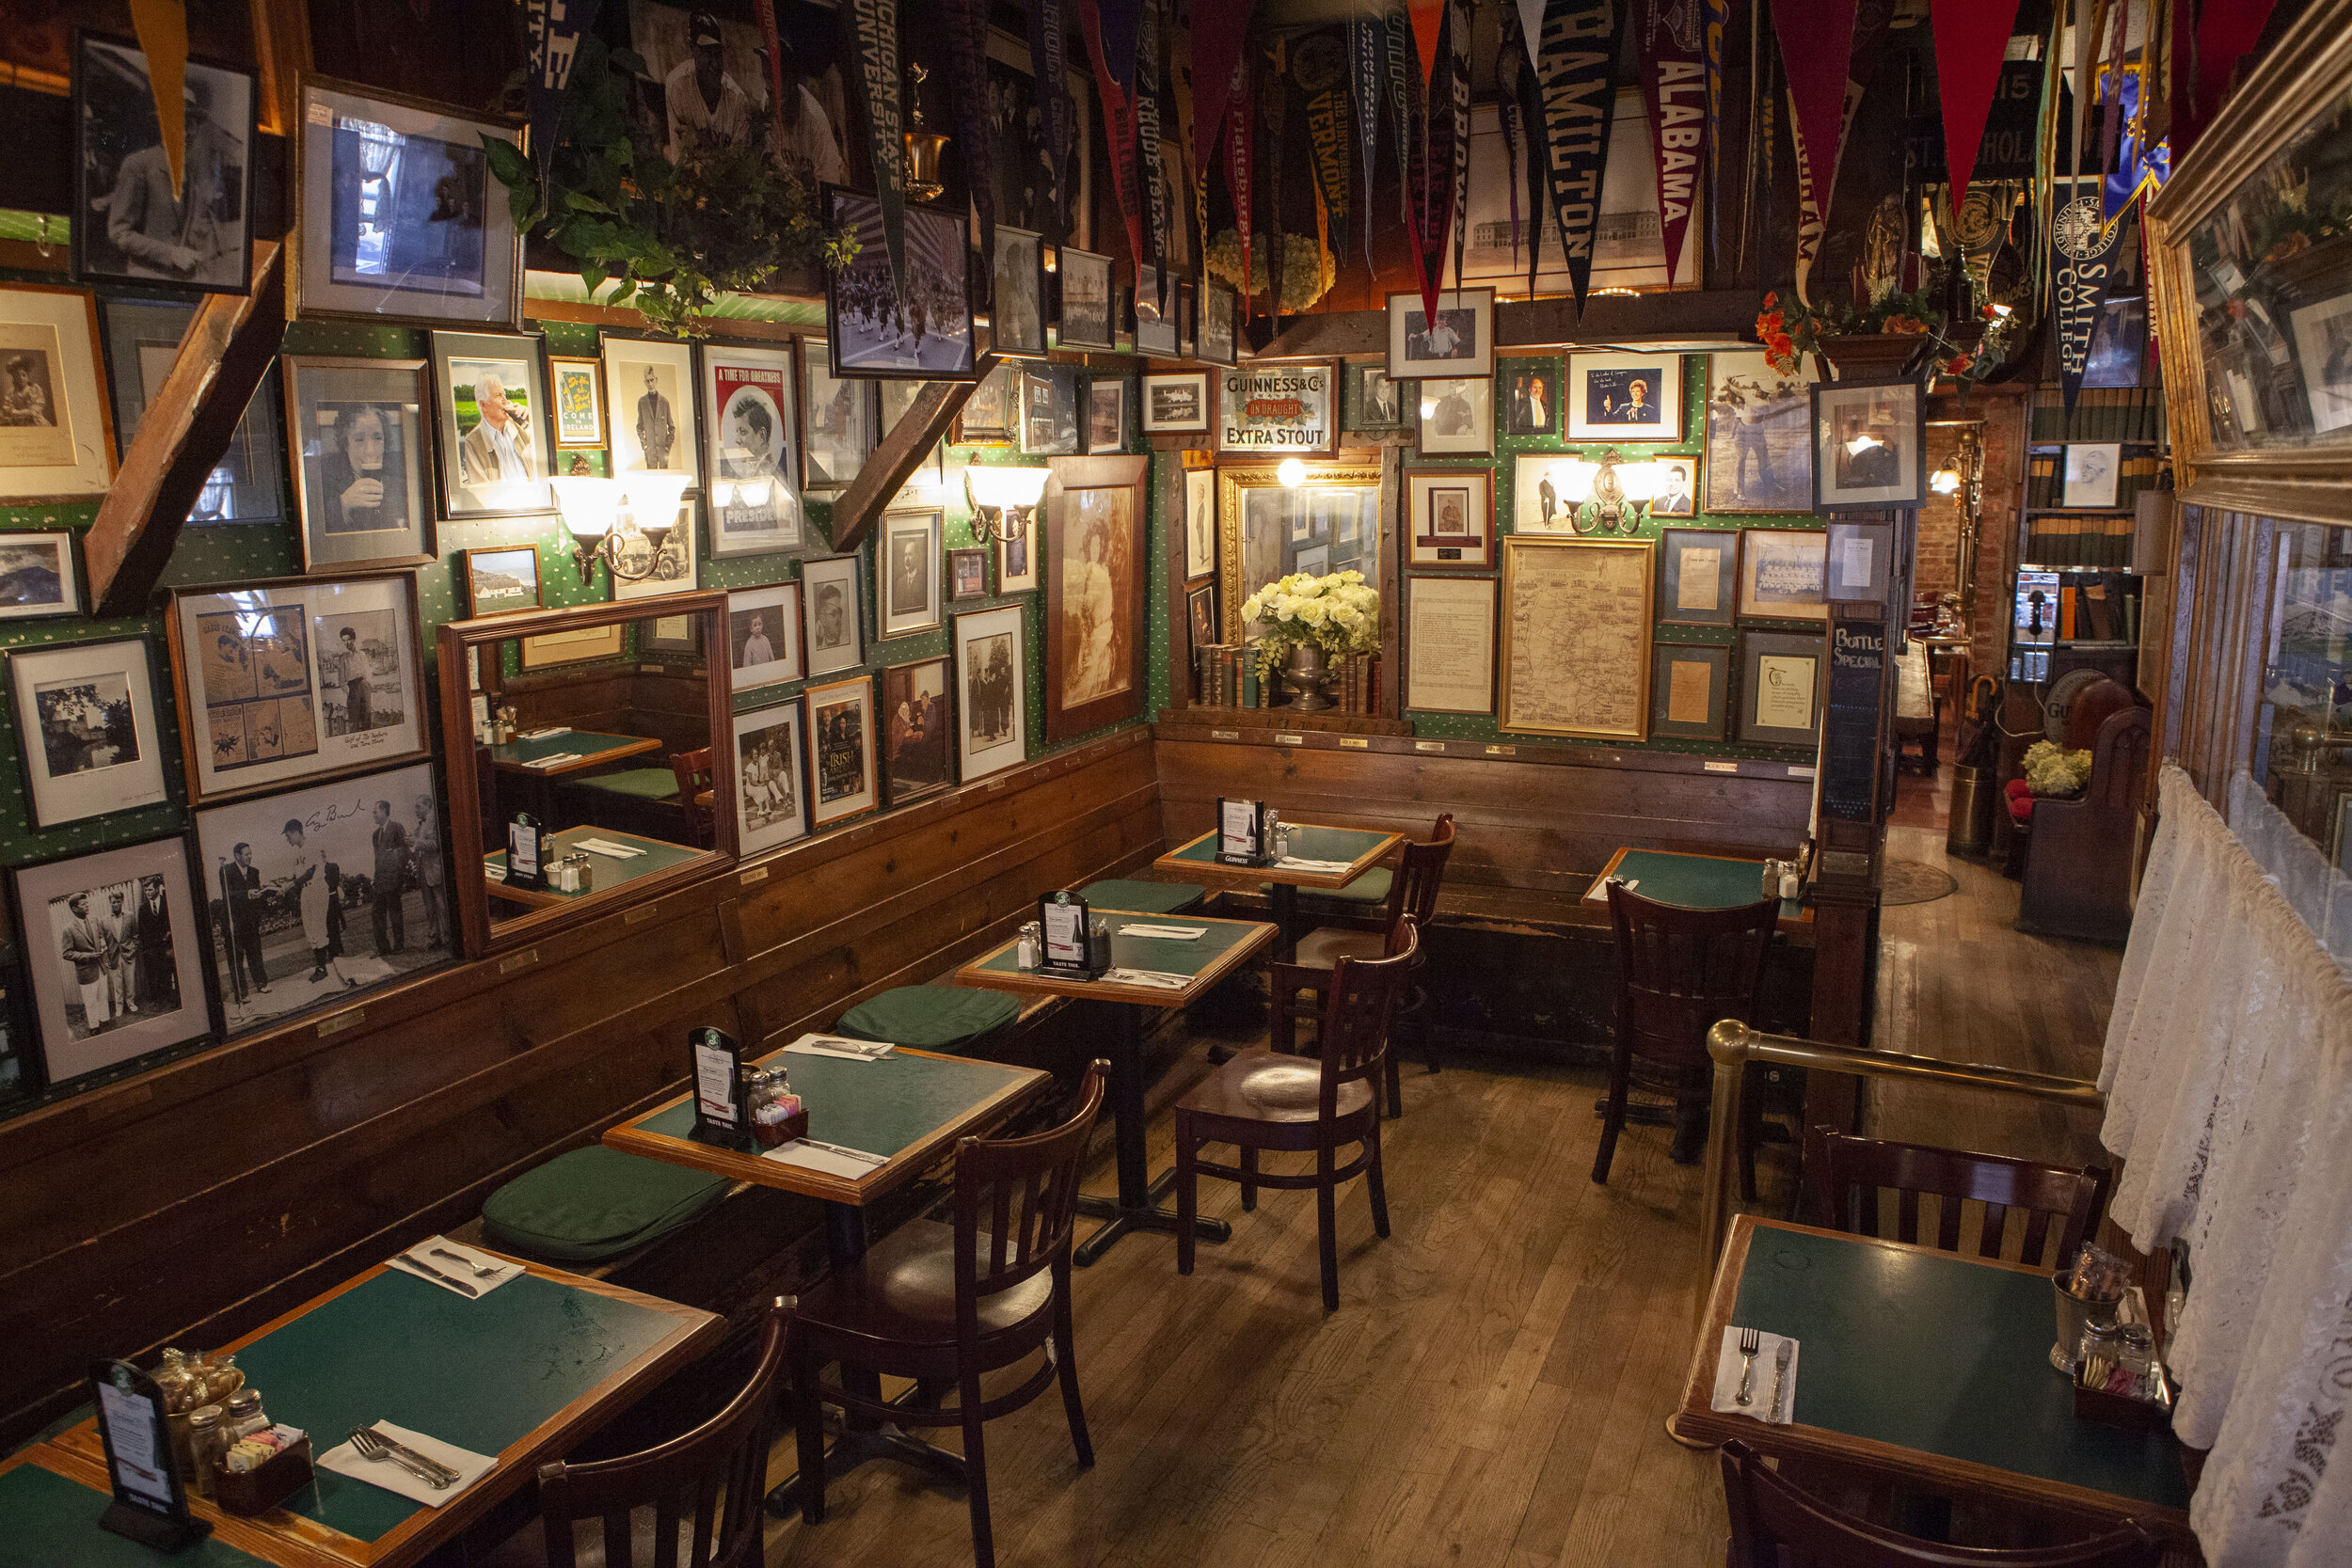 Guinness-beer-Harp-Smithwicks-pub-Finnegan's-restaurant.jpg